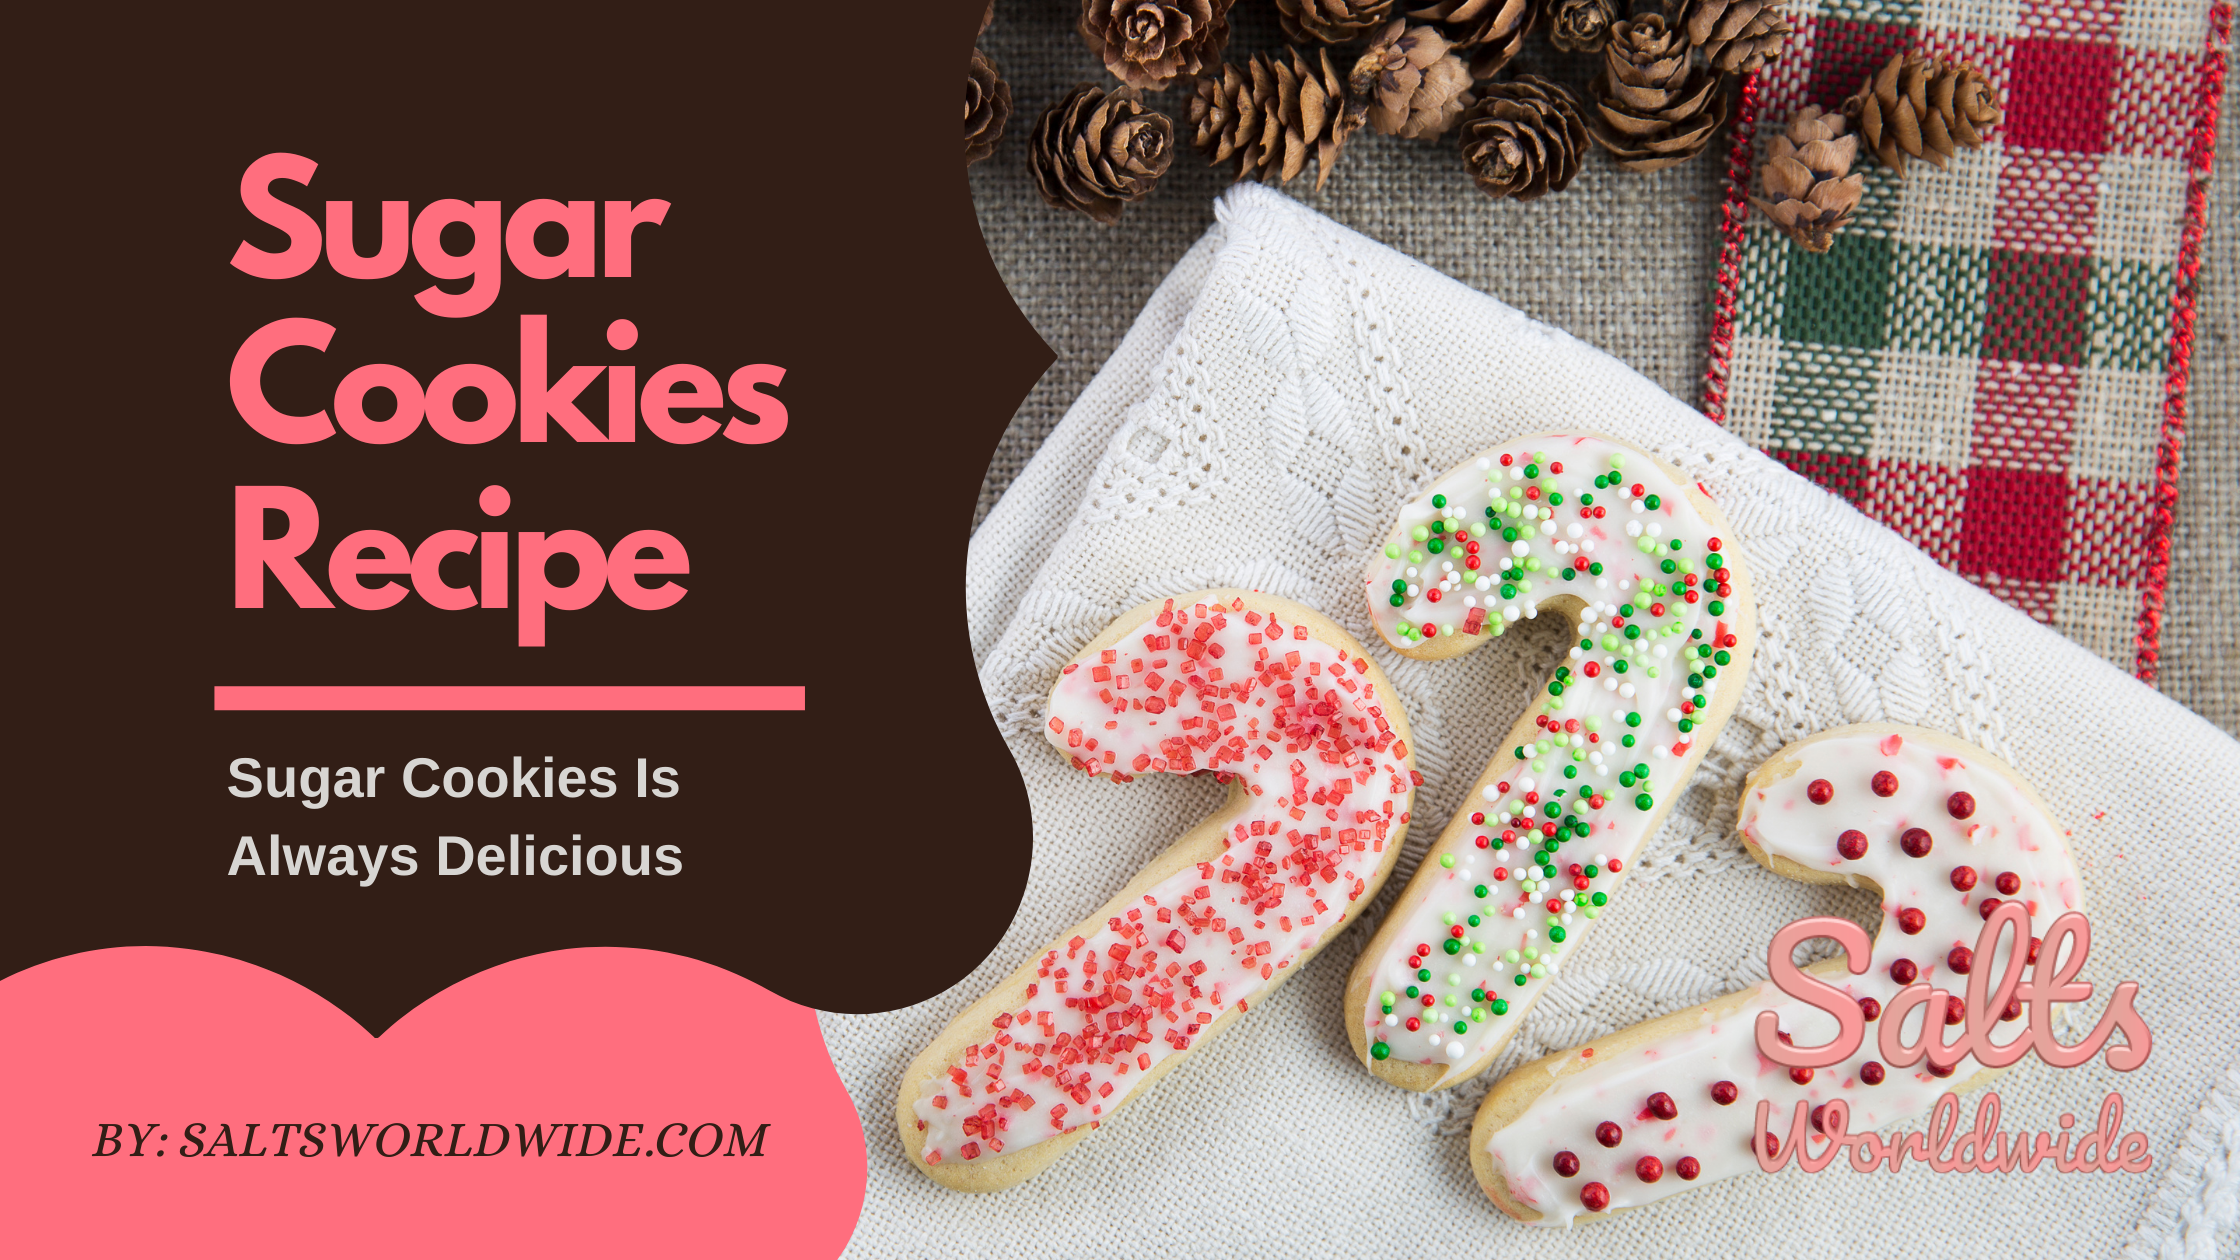 Sugar Cookies Recipe - Sugar Cookies Is Always Delicious